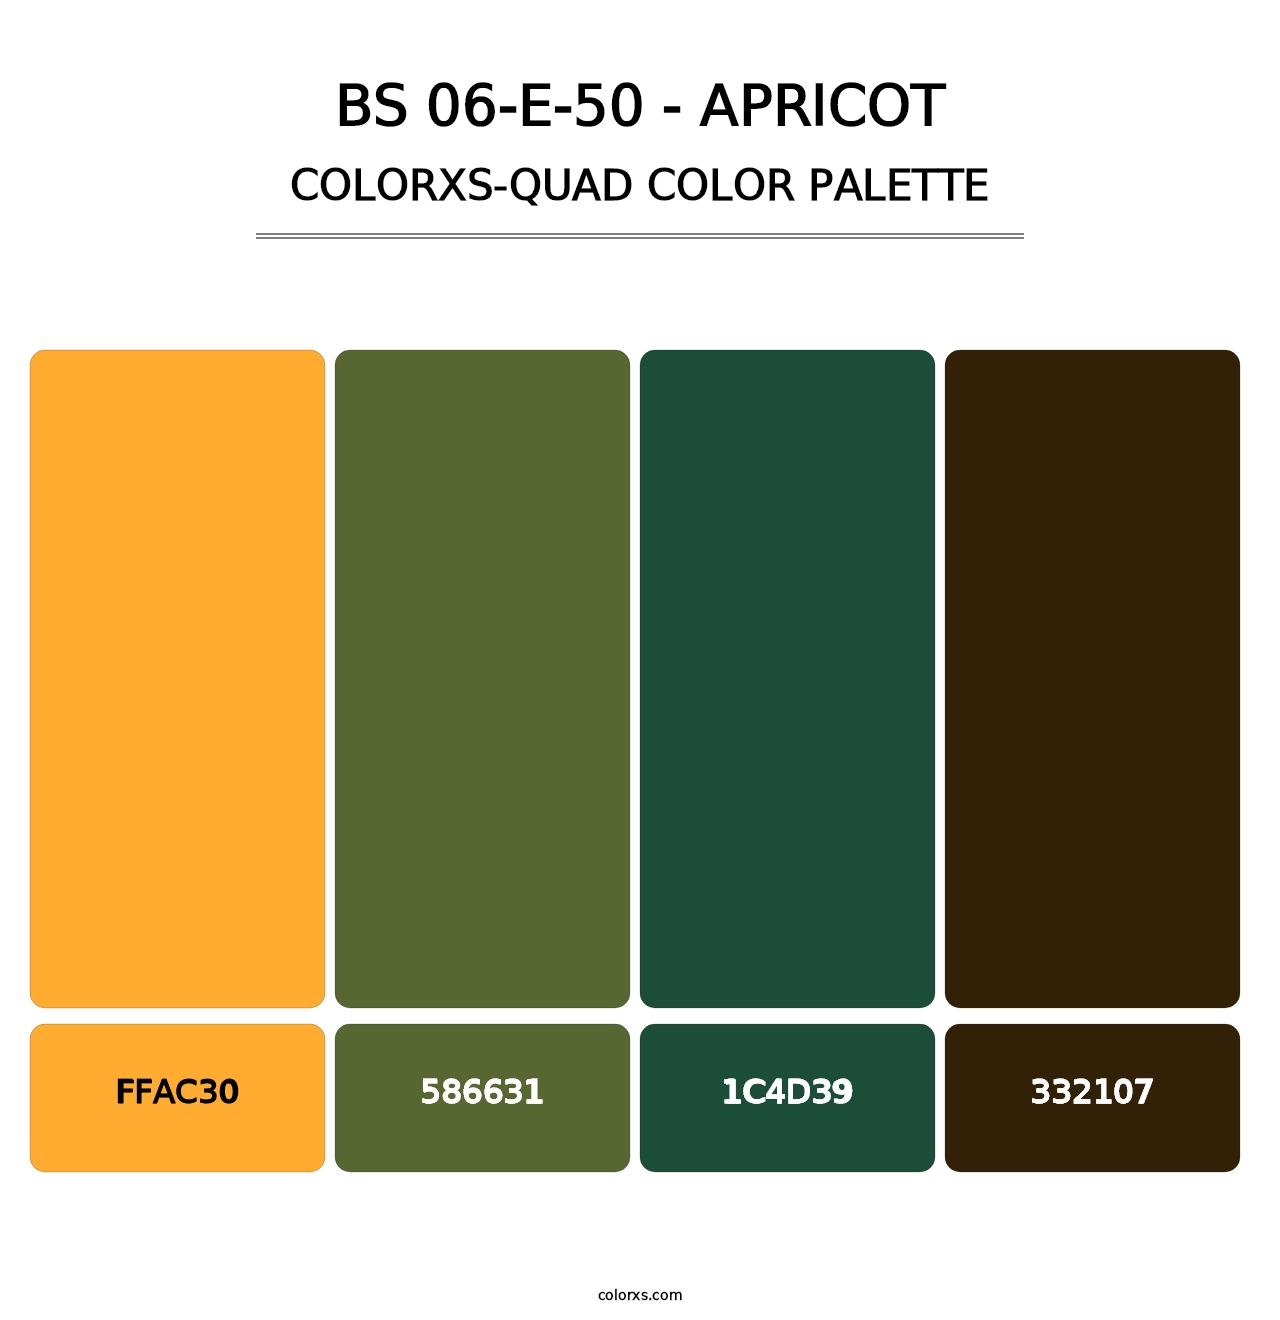 BS 06-E-50 - Apricot - Colorxs Quad Palette